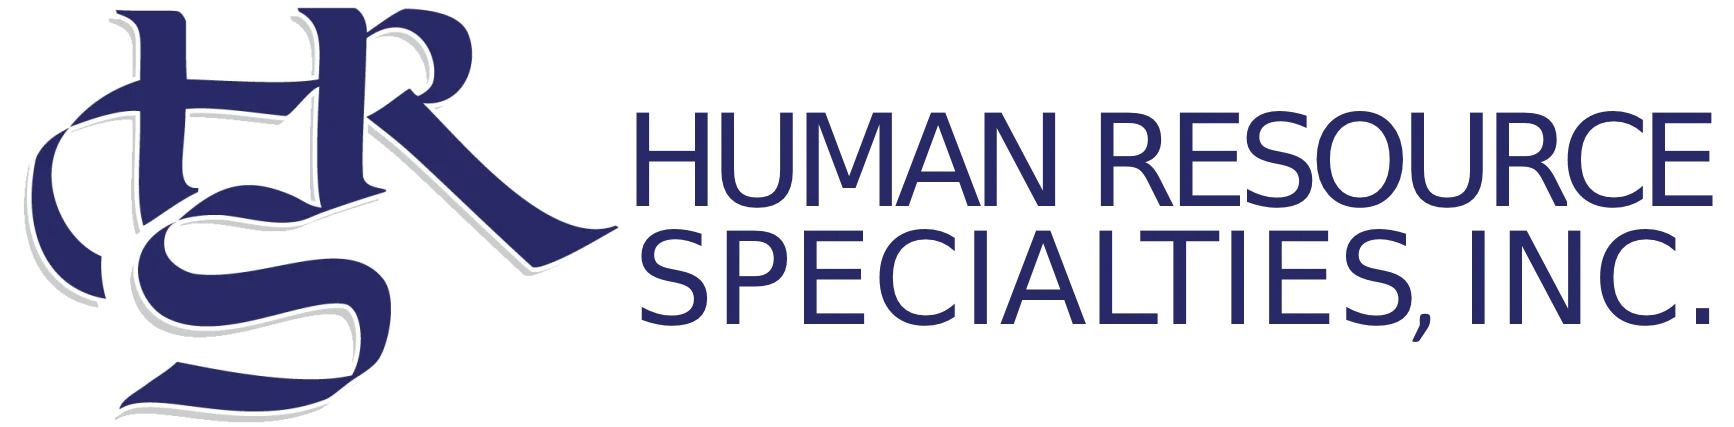 Human Resource Specialties, Inc.